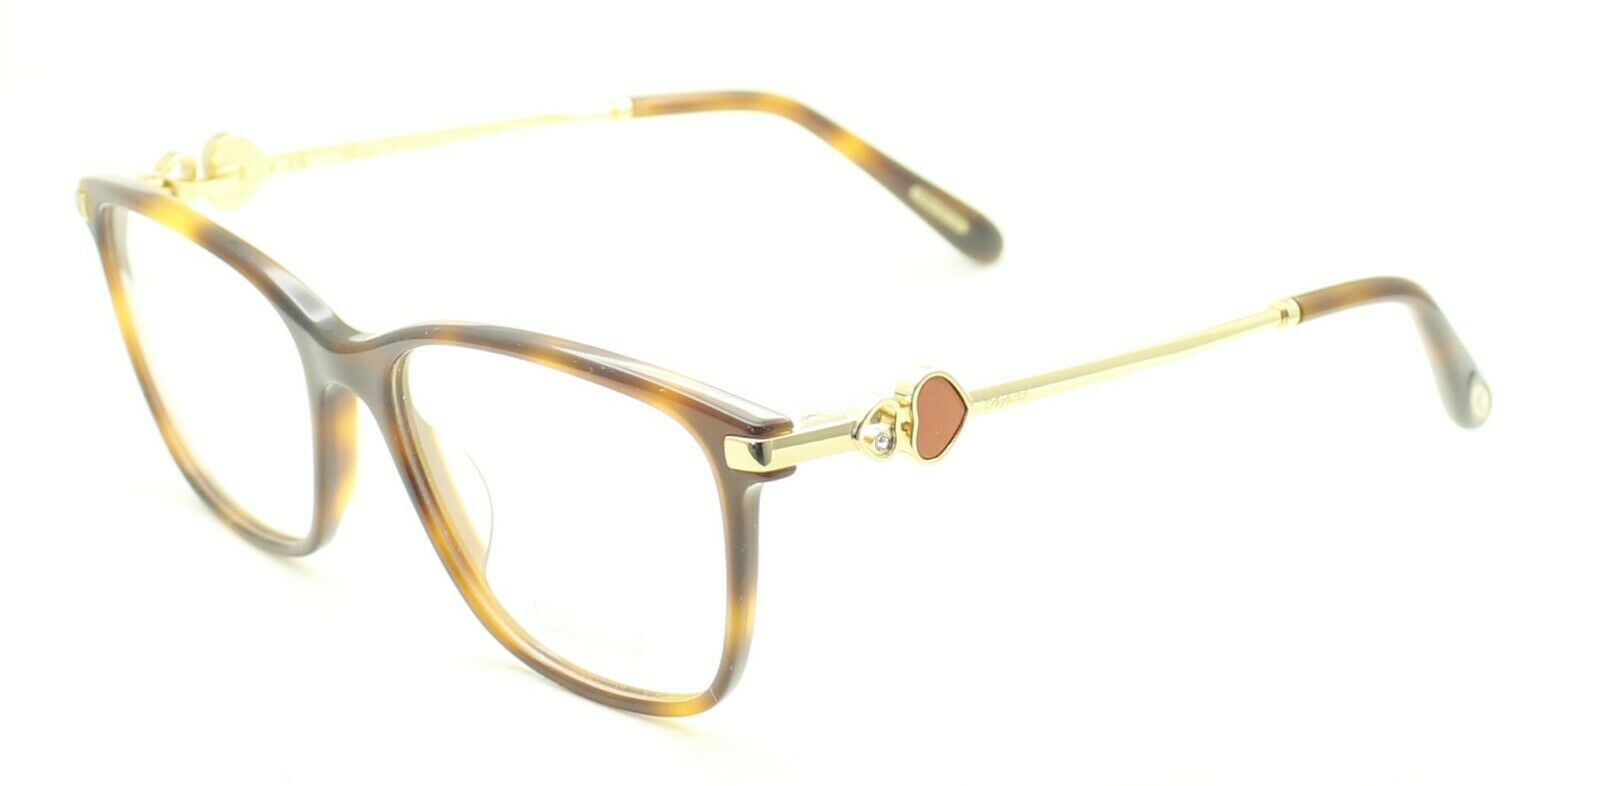 CHOPARD VCH 244S 0752 53mm Eyewear FRAMES Eyeglasses RX Optical Glasses - New